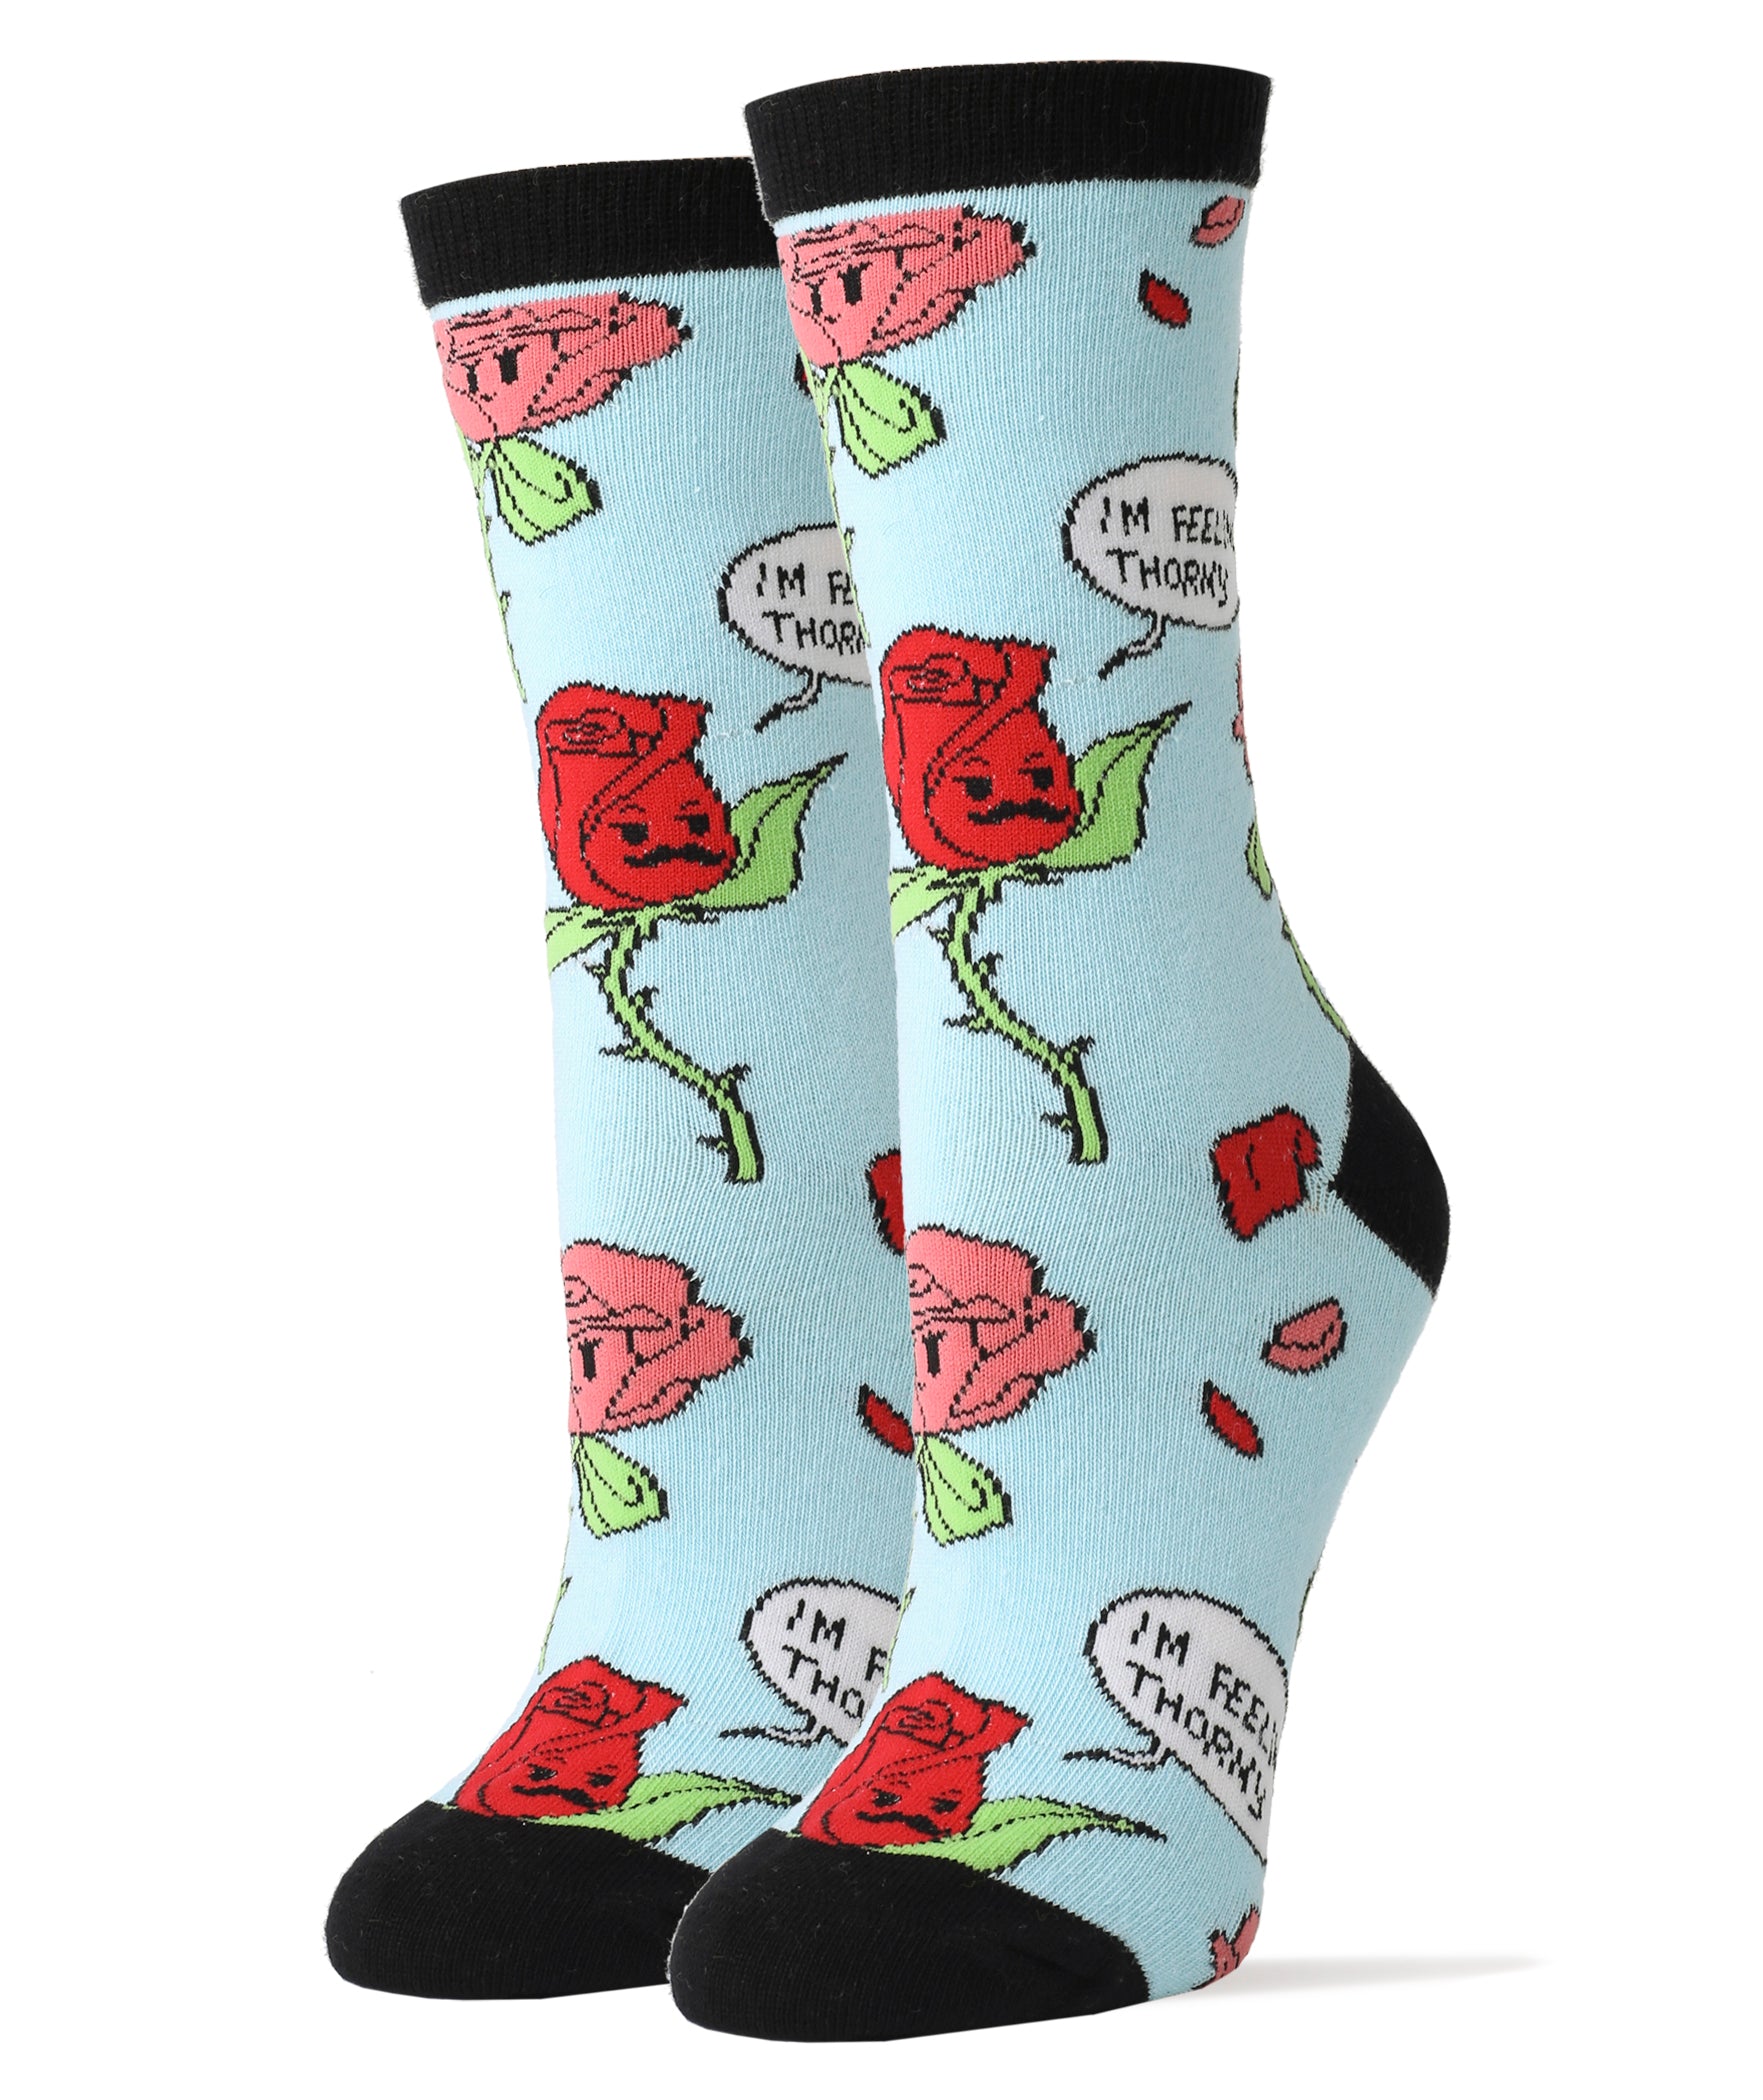 Thorny Socks | Novelty Crew Socks For Women